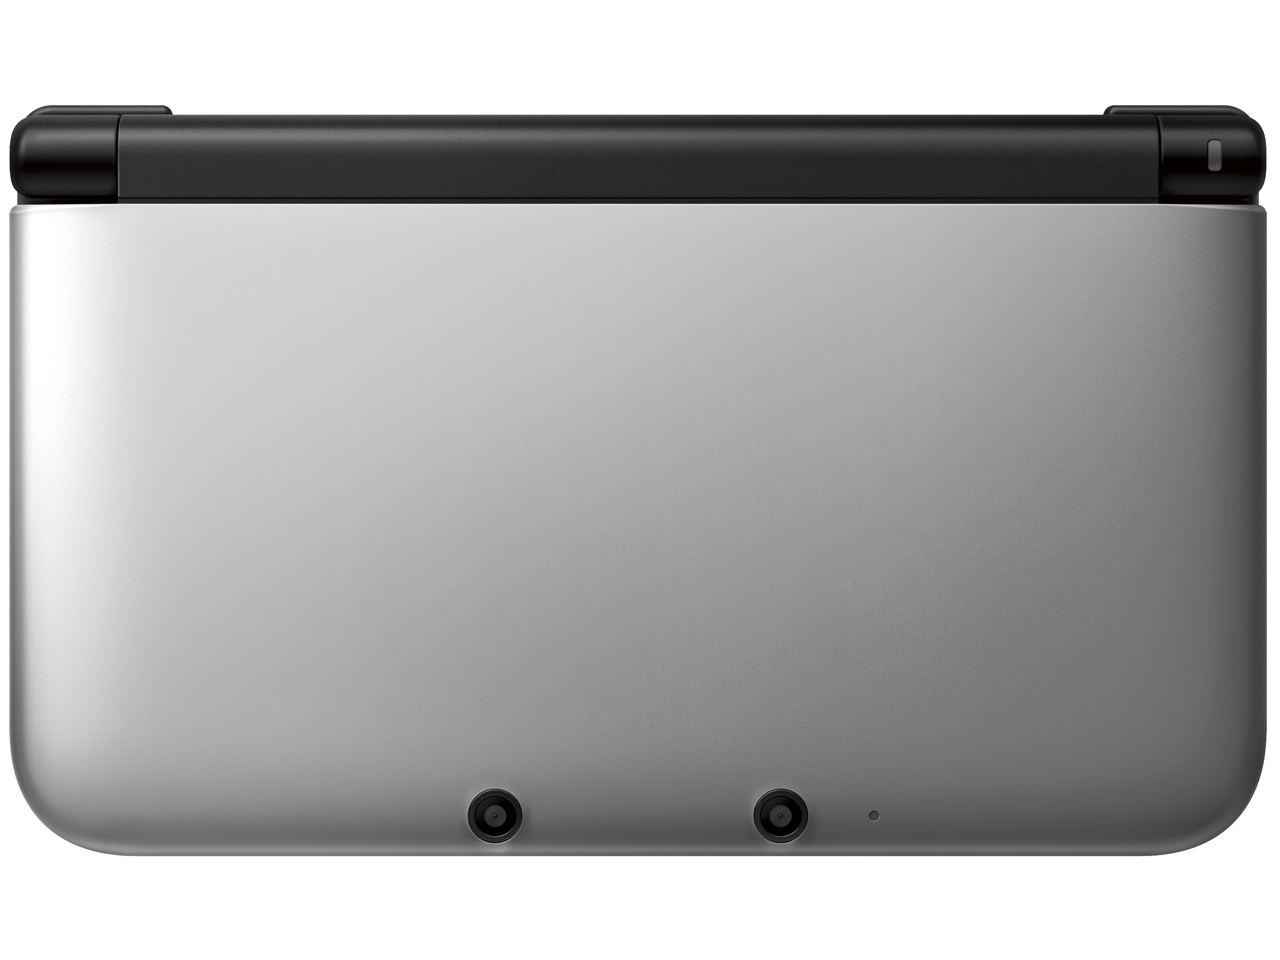 価格.com - ニンテンドー3DS LL シルバー×ブラック の製品画像